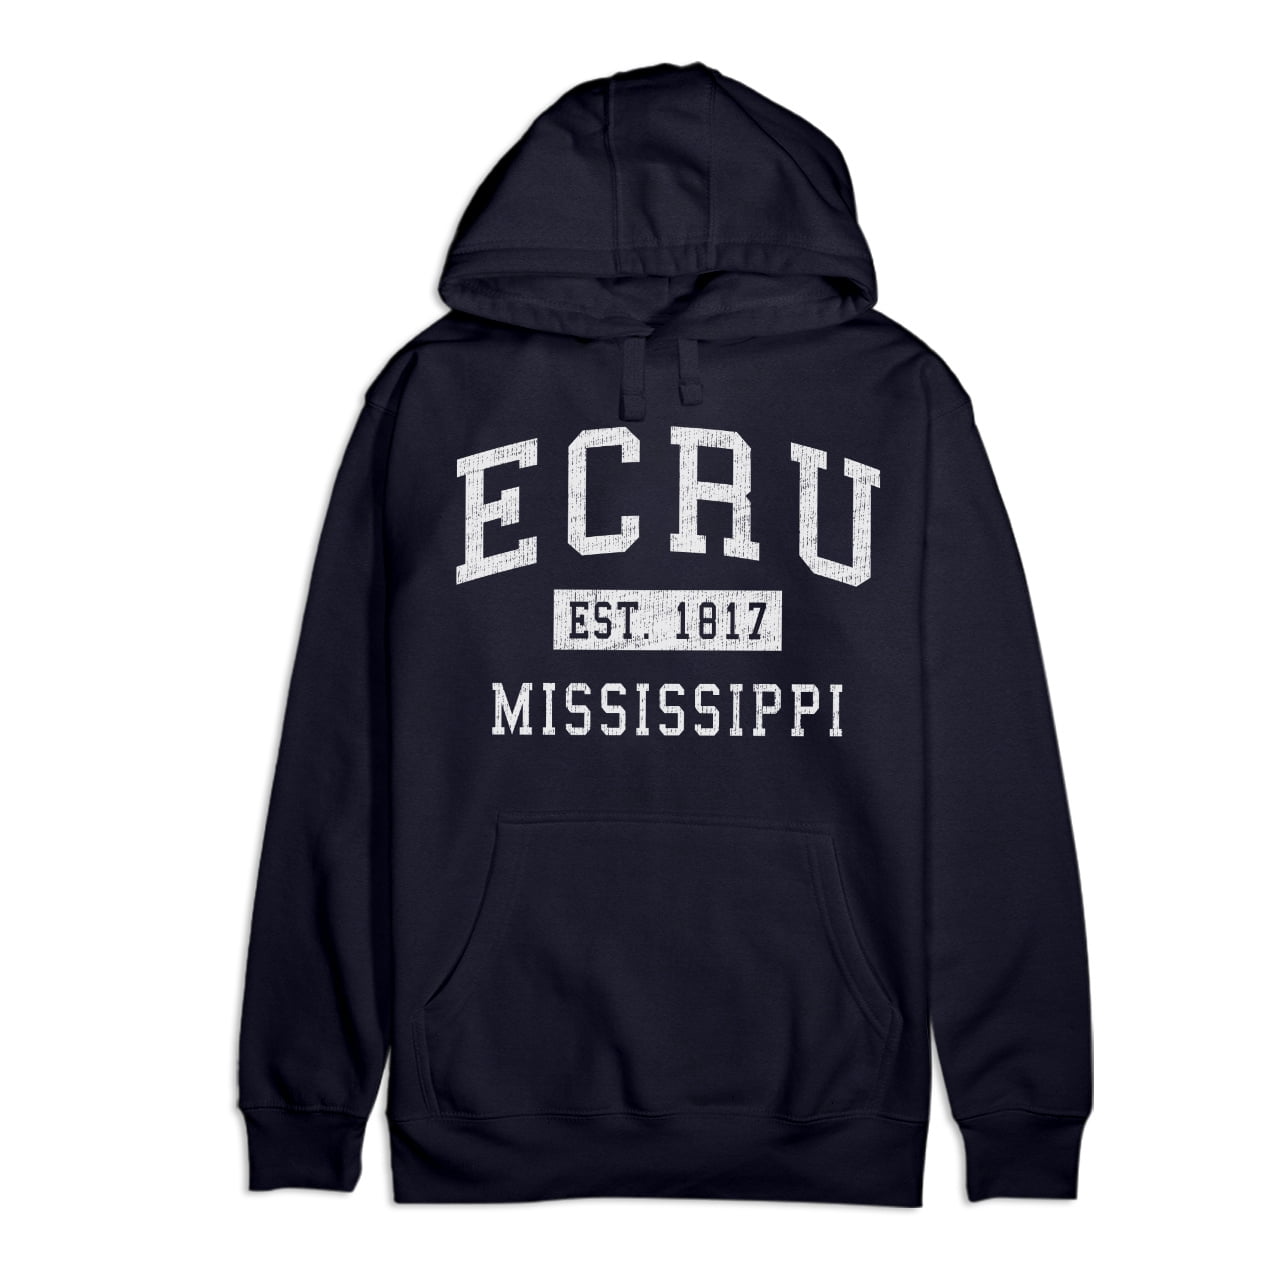 Ecru Football Jersey. Drop One. Shop Now.